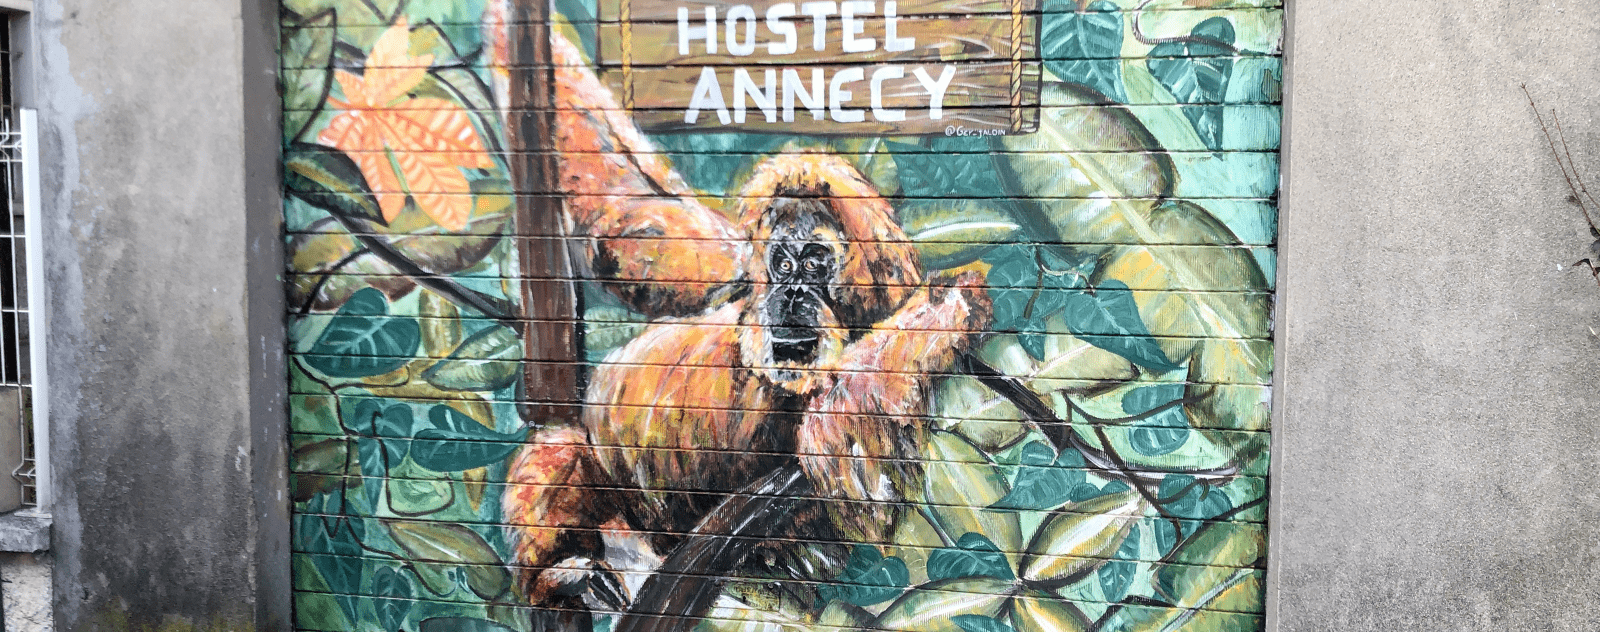 Hostel Annecy